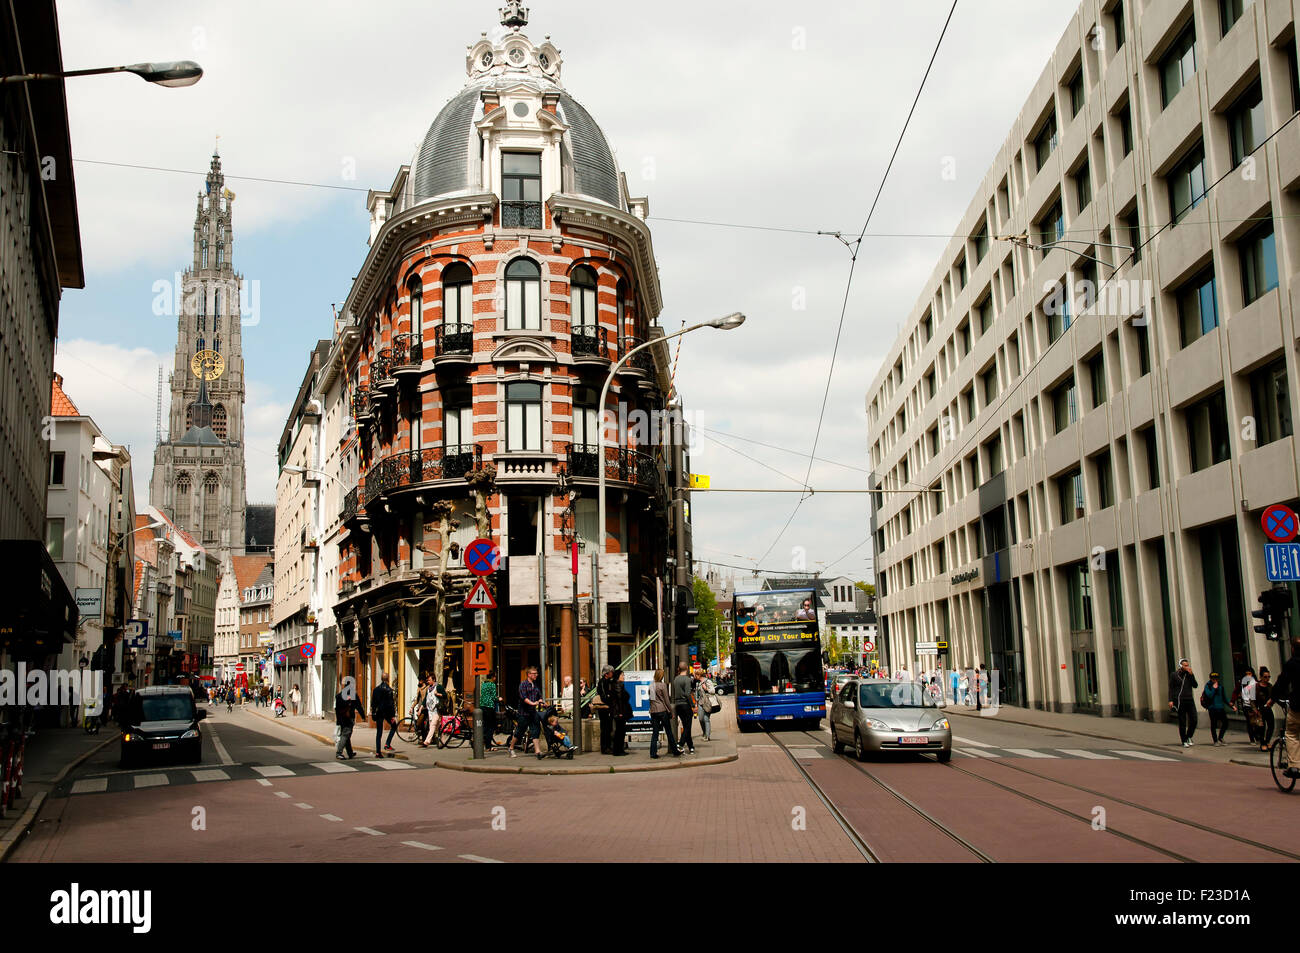 El área metropolitana de Amberes y la segunda ciudad más poblada de Bélgica Foto de stock